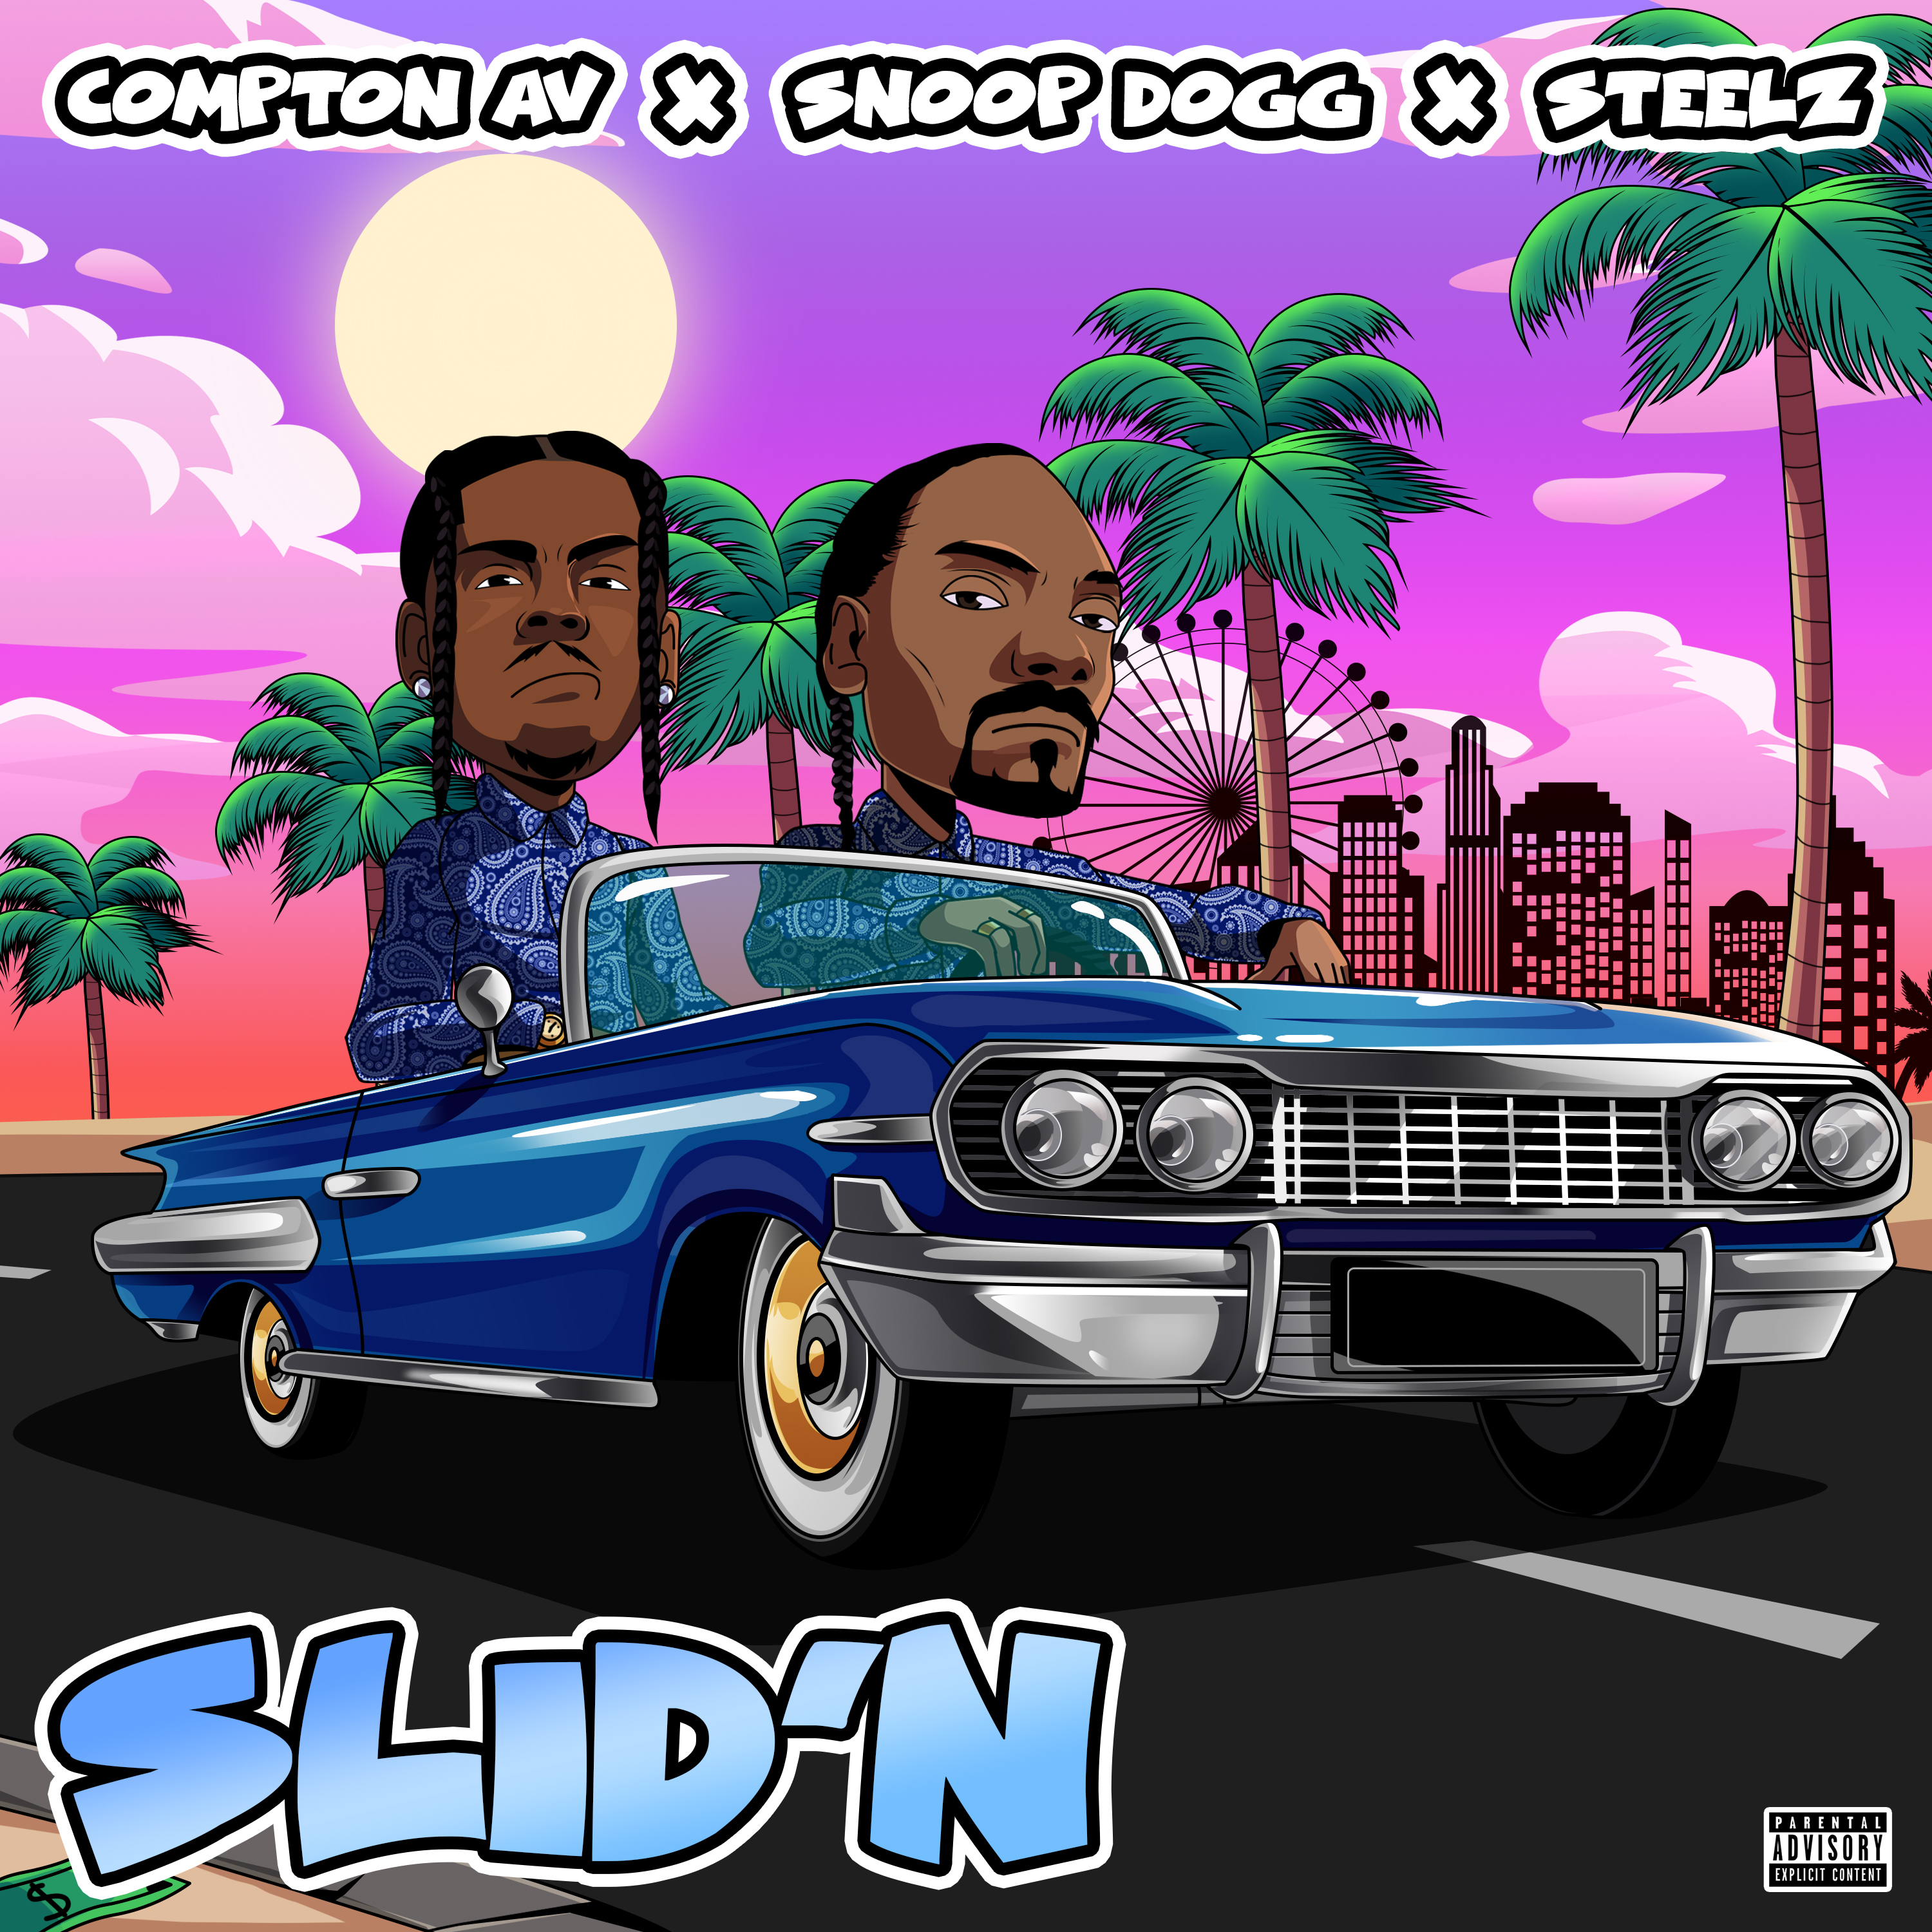 Art for Slid'N (Clean) by Compton AV ft Snoop Dogg & Steelz